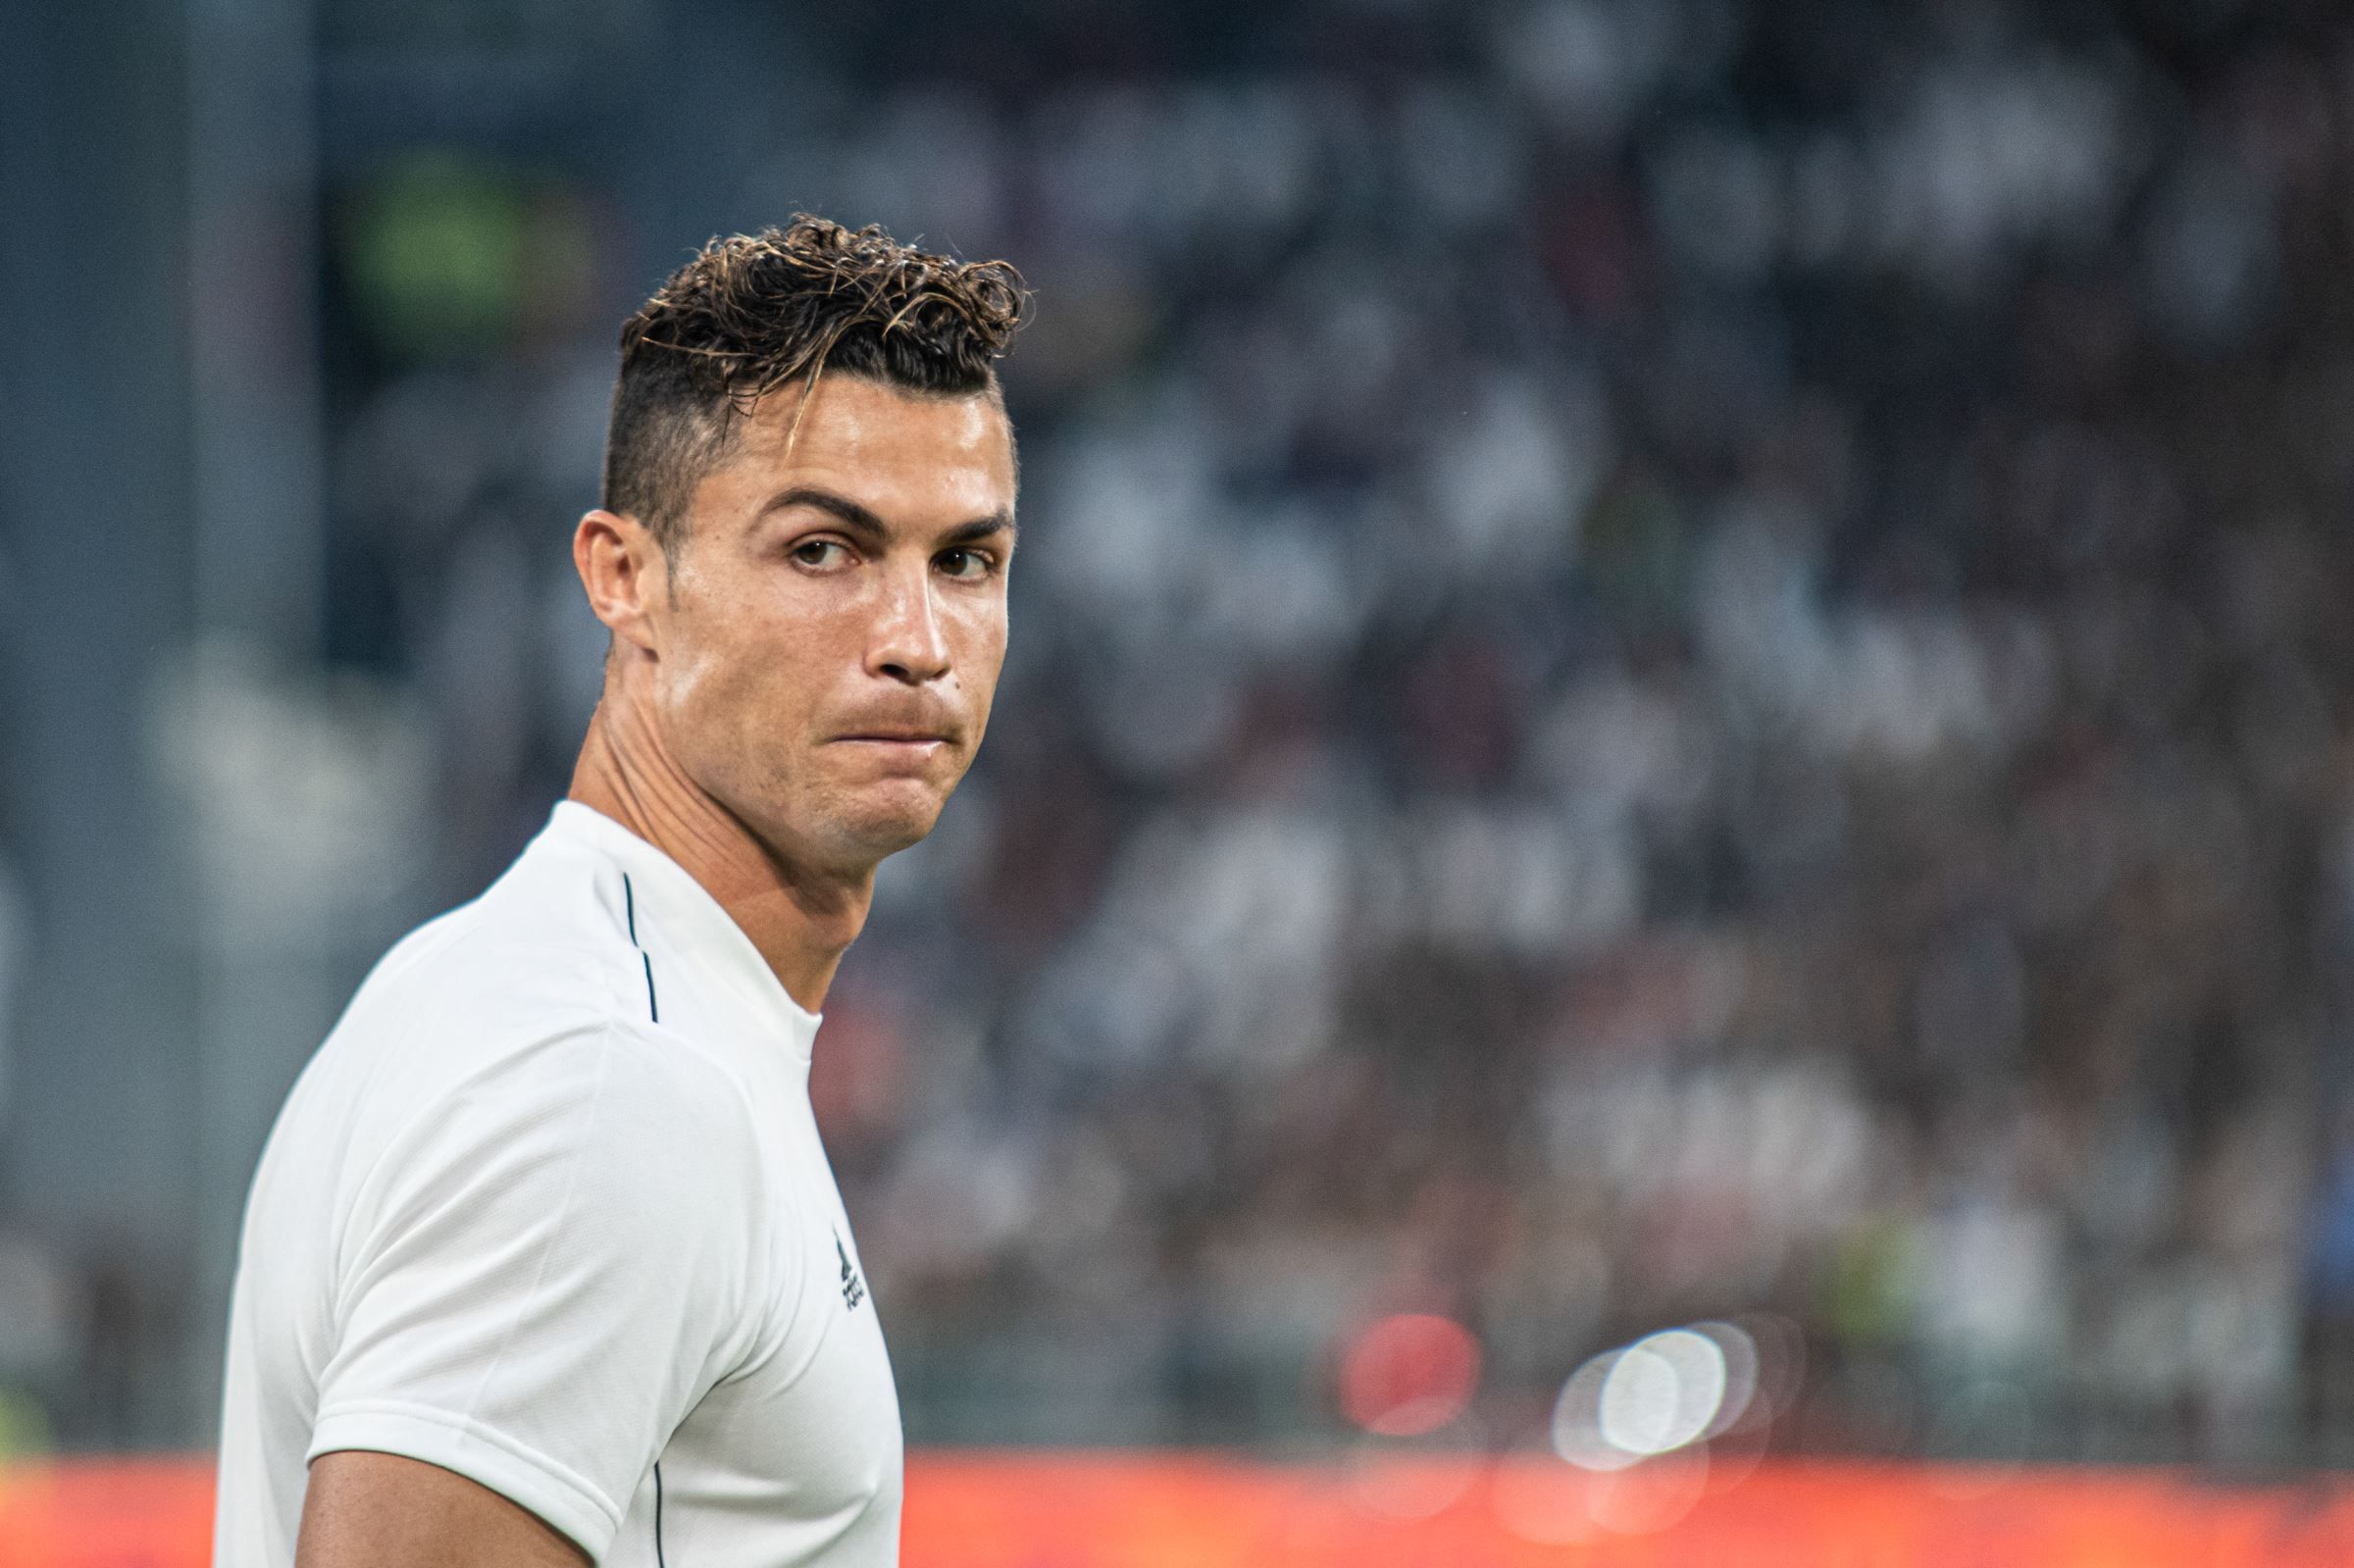 Chelsea envisage le coup d’État de Cristiano Ronaldo cet été